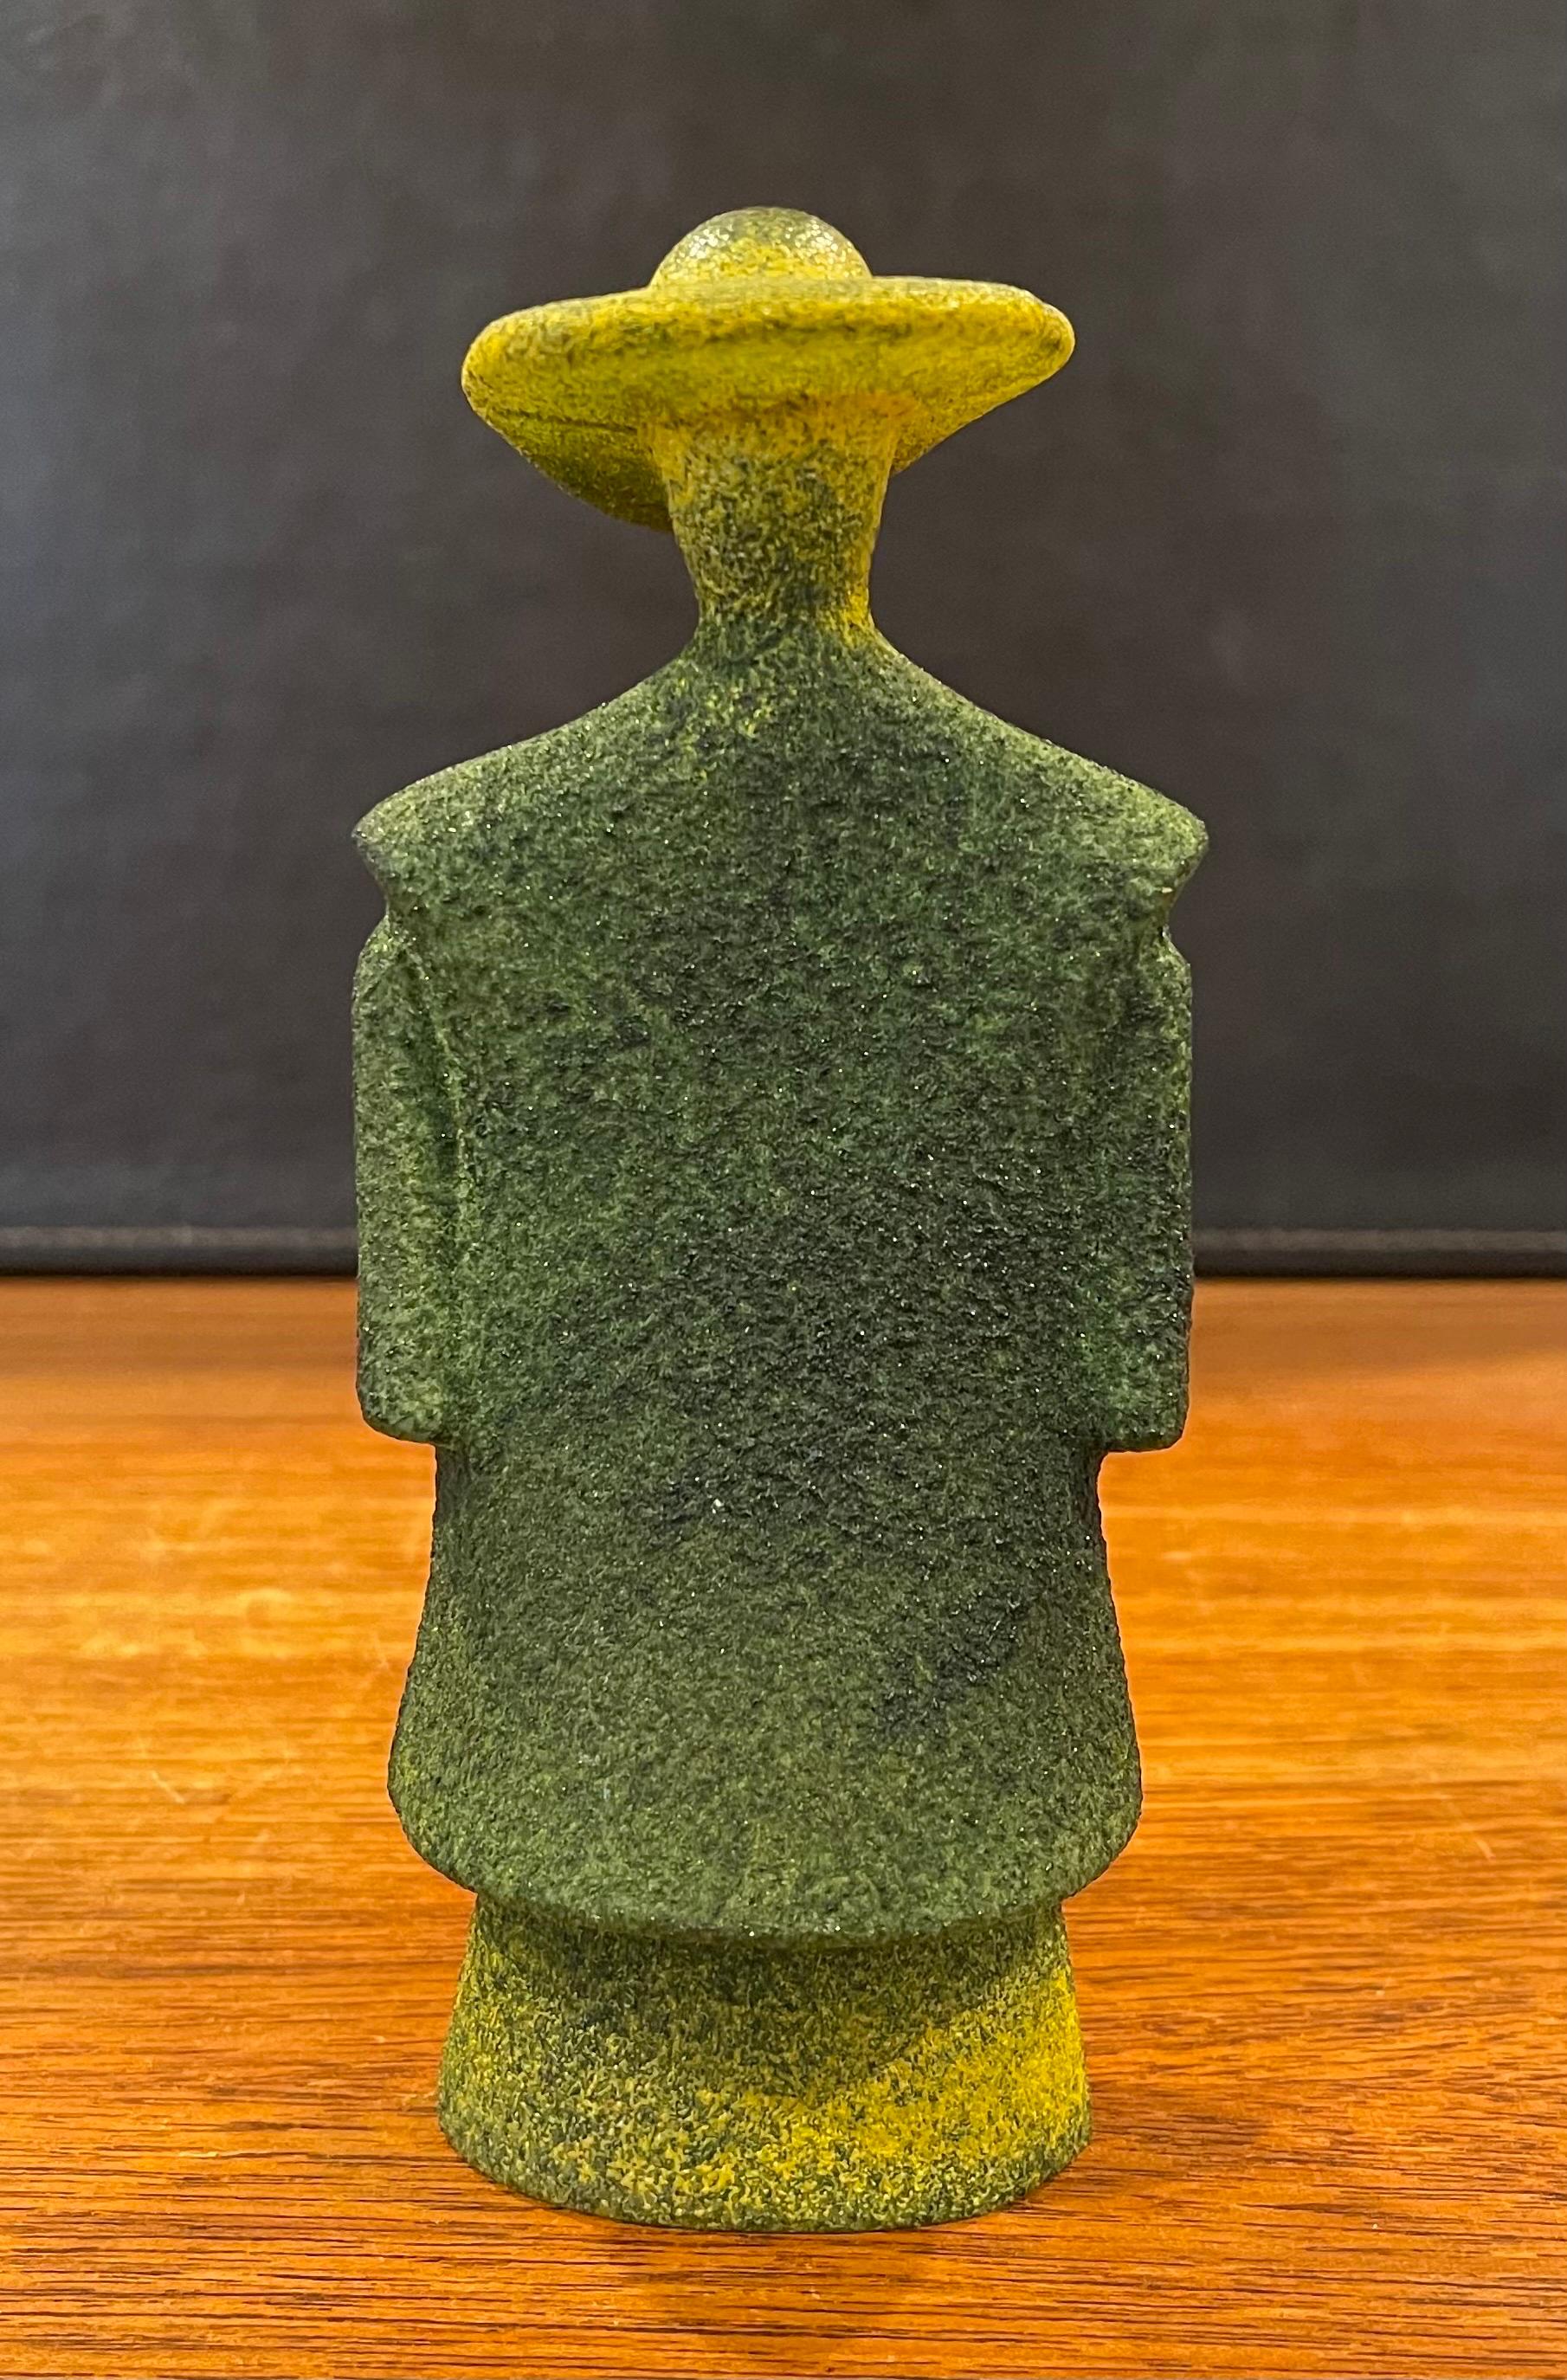 Poncho Green Art Glass Catwalk Sculpture by Kjell Engman for Kosta Boda Sweden For Sale 5